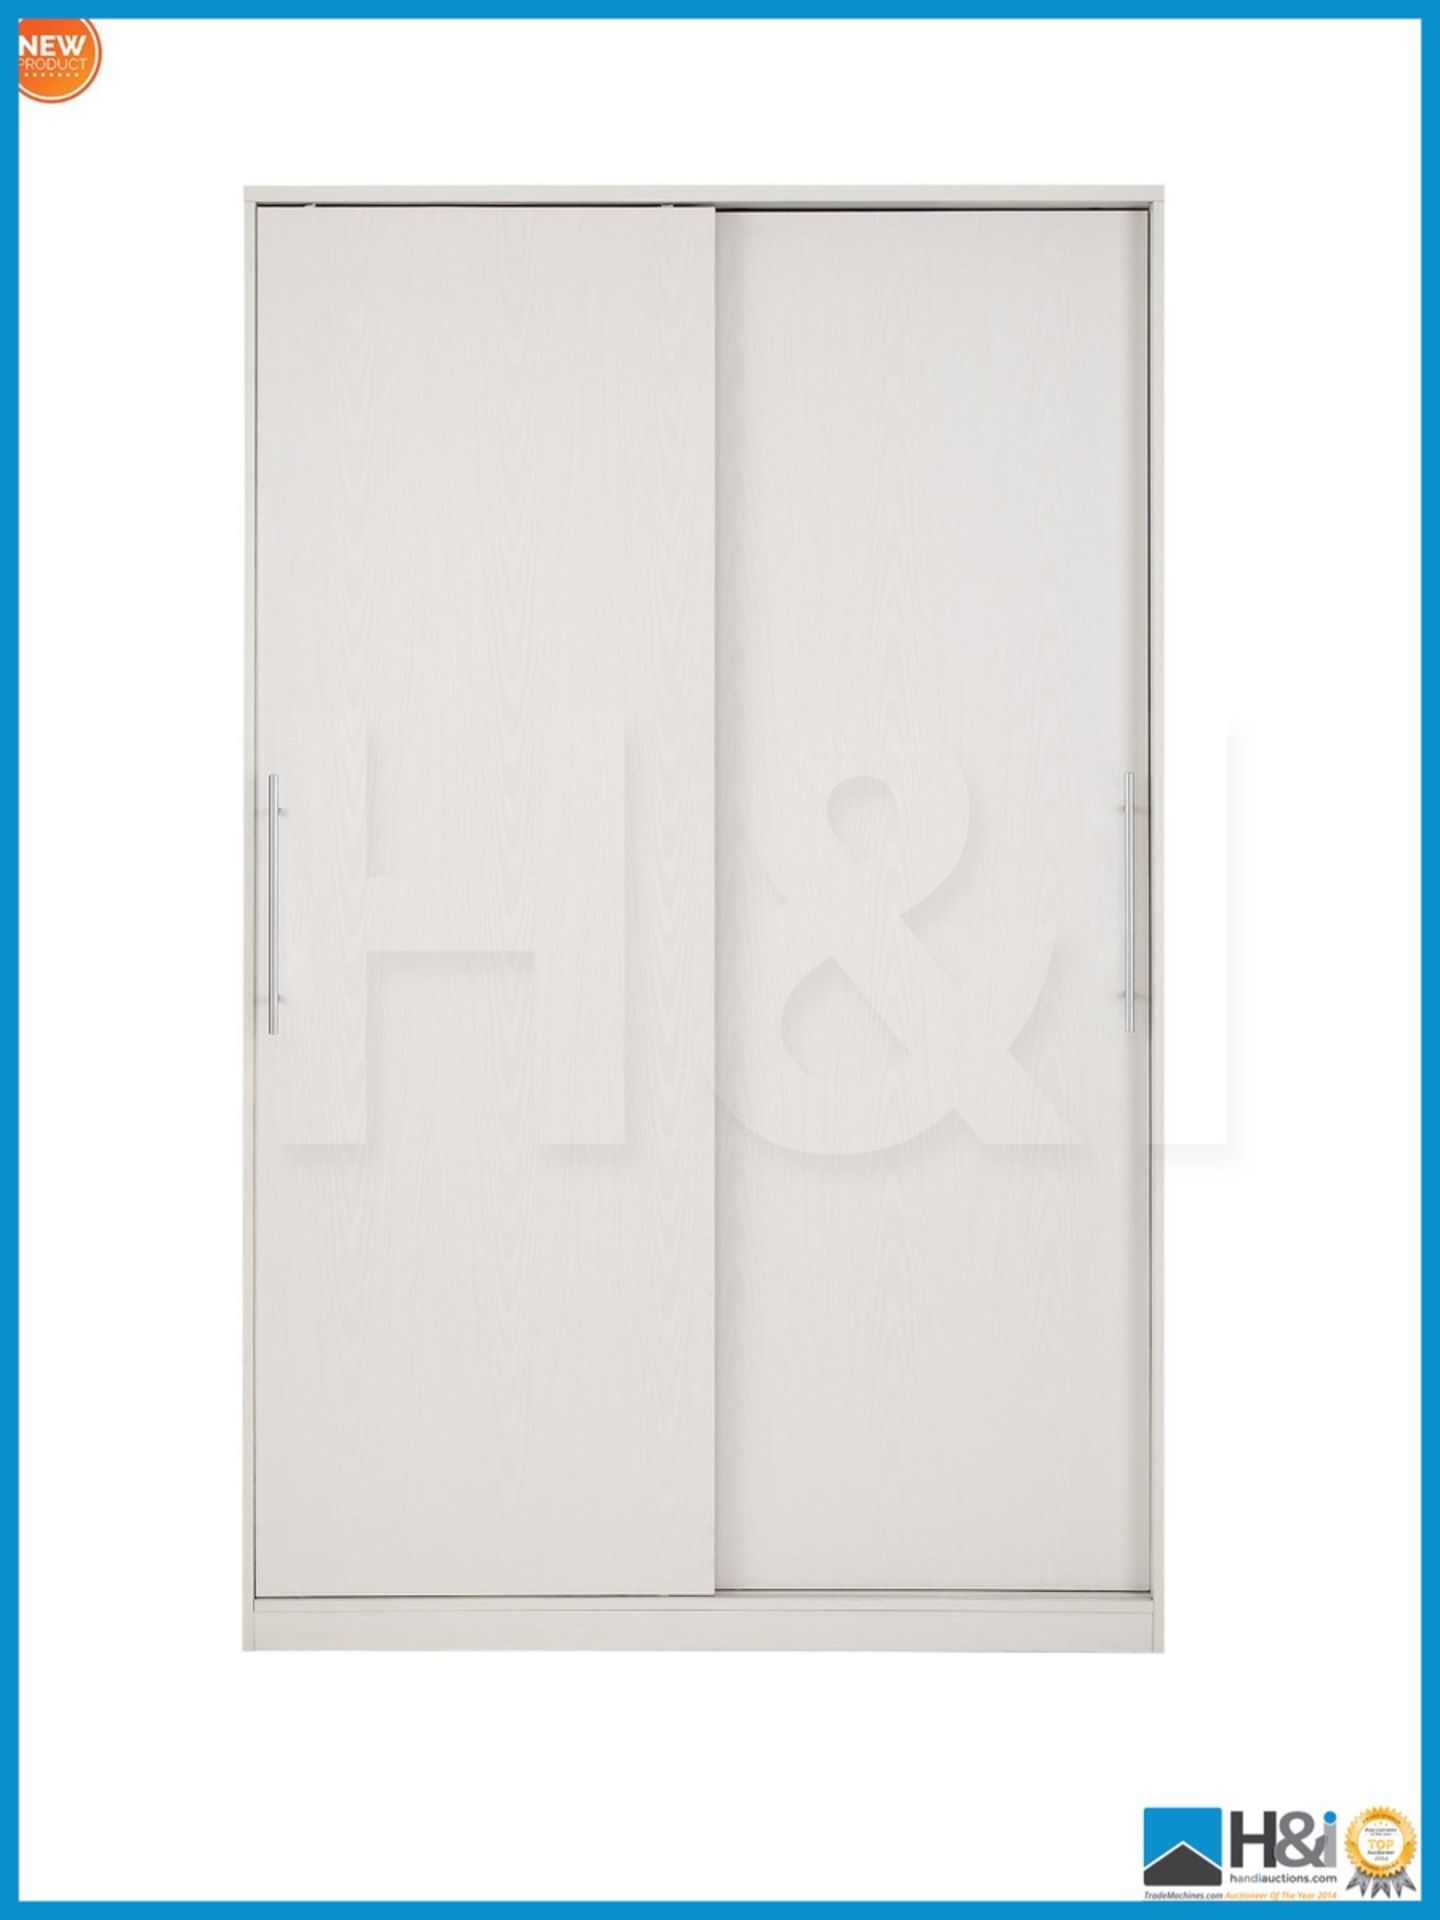 NEW IN BOX PRAGUE 2DOOR SLIDER WARDROBE [WHITE] 199 x 123 x 62cm RRP £376 Appraisal: Viewing